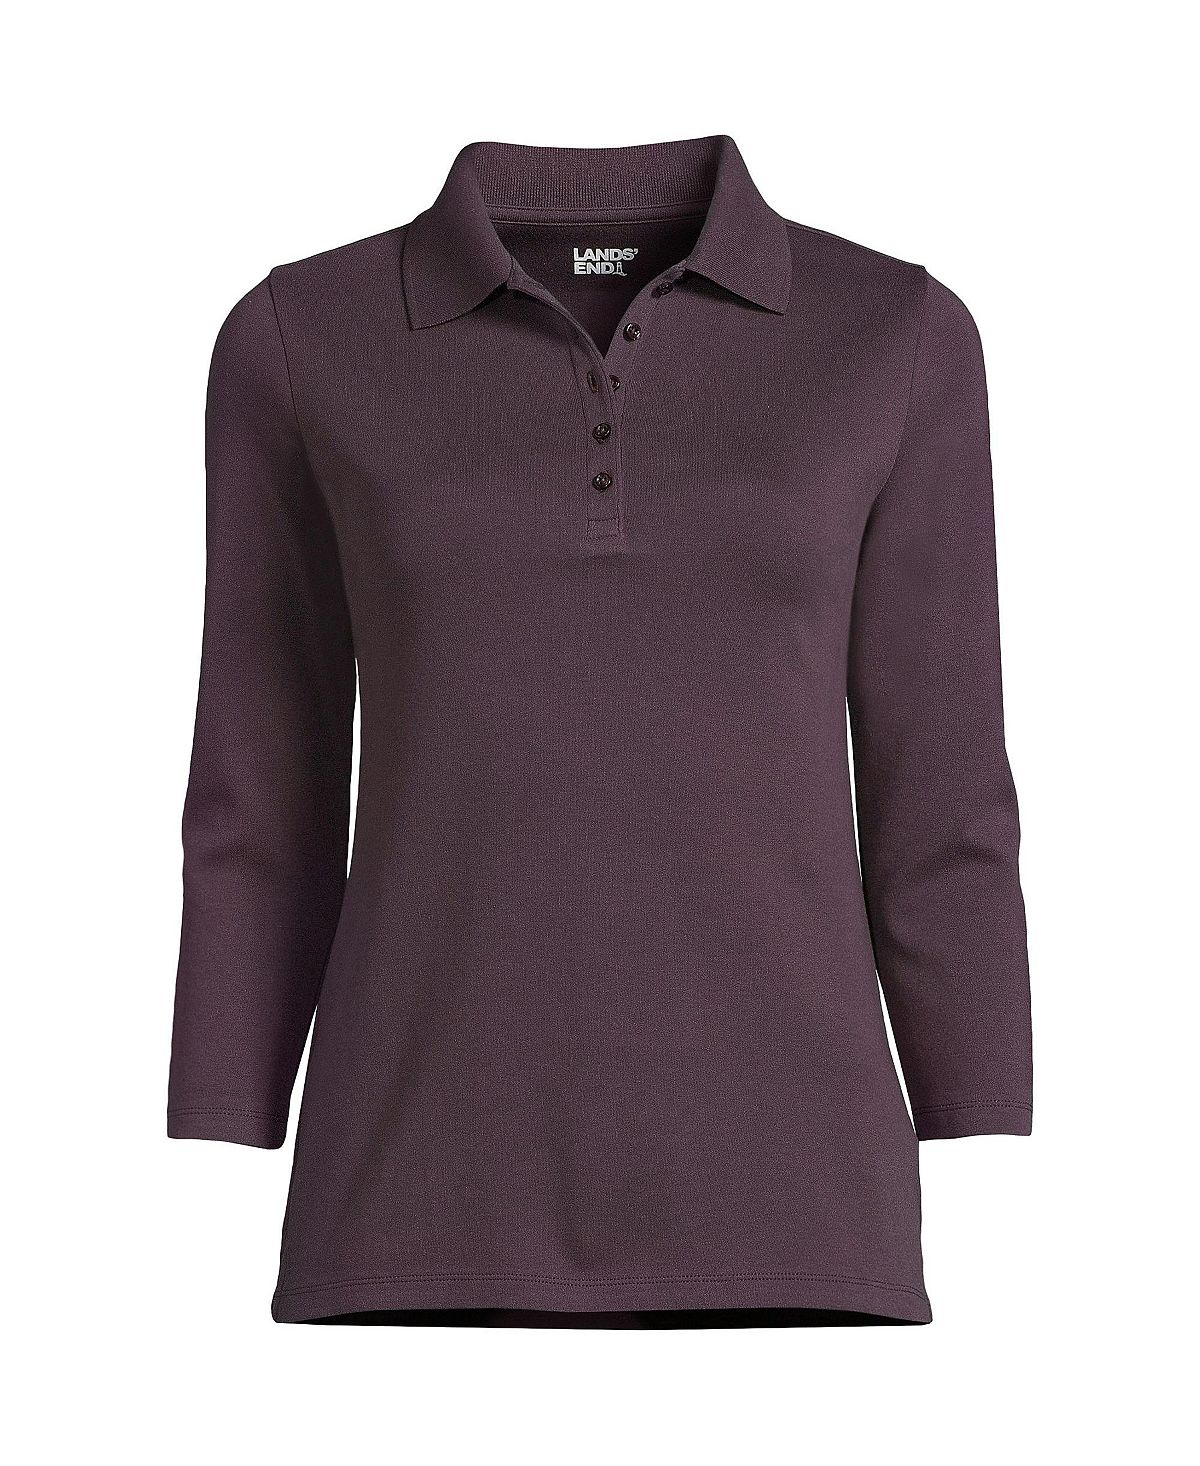 Женская хлопковая рубашка-поло интерлок с рукавом 3/4 для миниатюрных женщин Lands' End